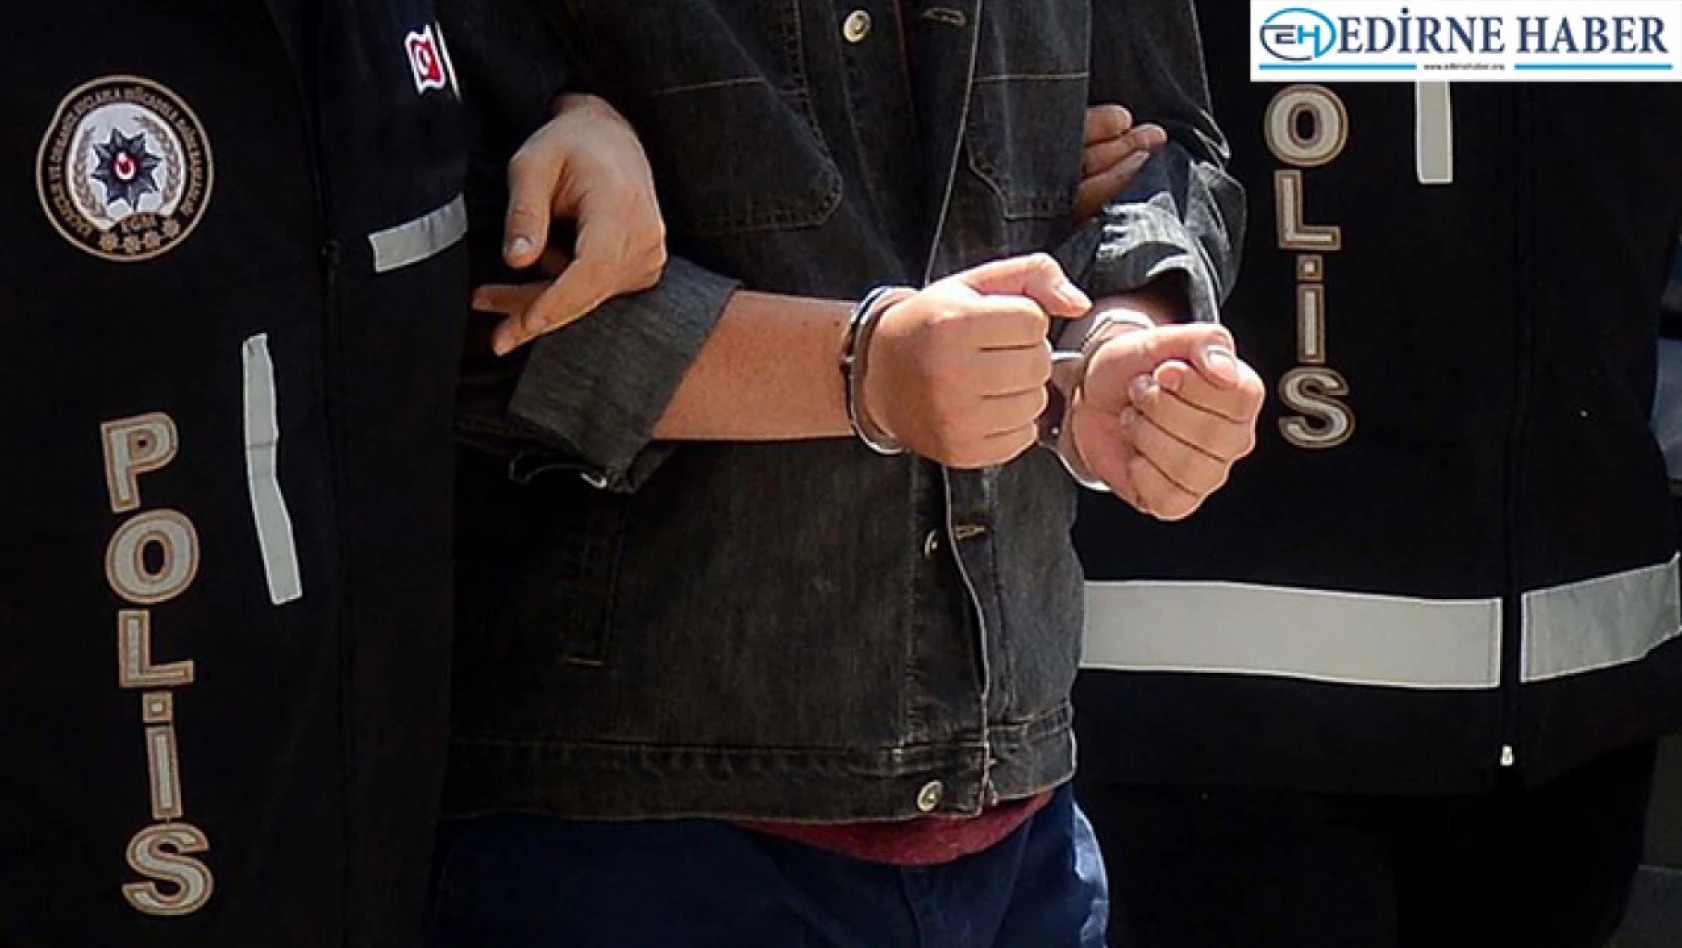 Edirne'de uyuşturucu ele geçirilen otomobildeki 2 zanlı tutuklandı